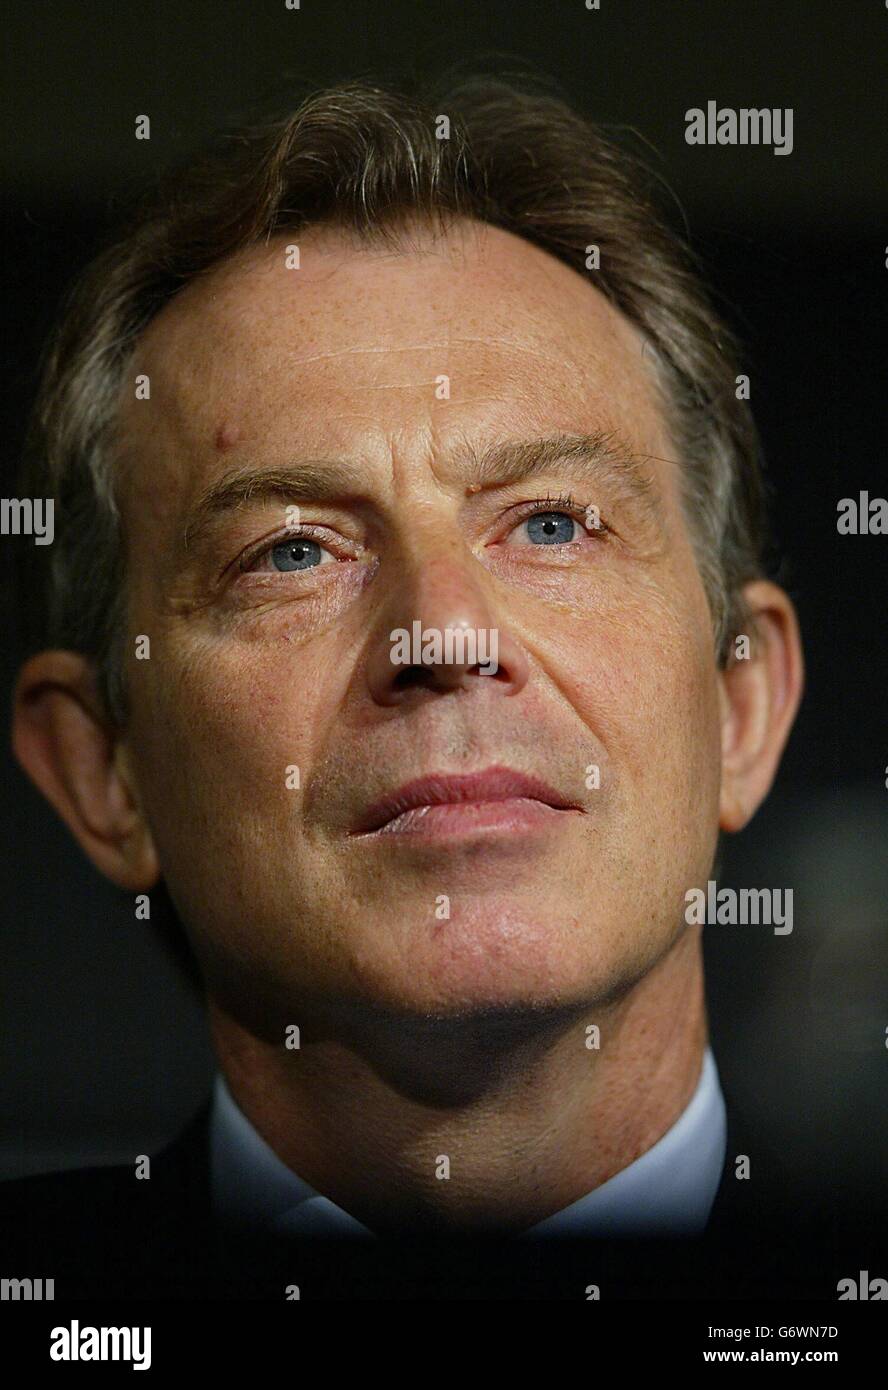 Il primo ministro Tony Blair si rivolge ai governatori della riunione annuale della Banca europea per la ricostruzione e lo sviluppo (BERS) a Londra. In un sondaggio di opinione pubblicato oggi, Blair potrebbe affrontare una forte opposizione da parte dei suoi banchi se chiamasse un referendum sulla nuova costituzione dell'Unione europea. Foto Stock